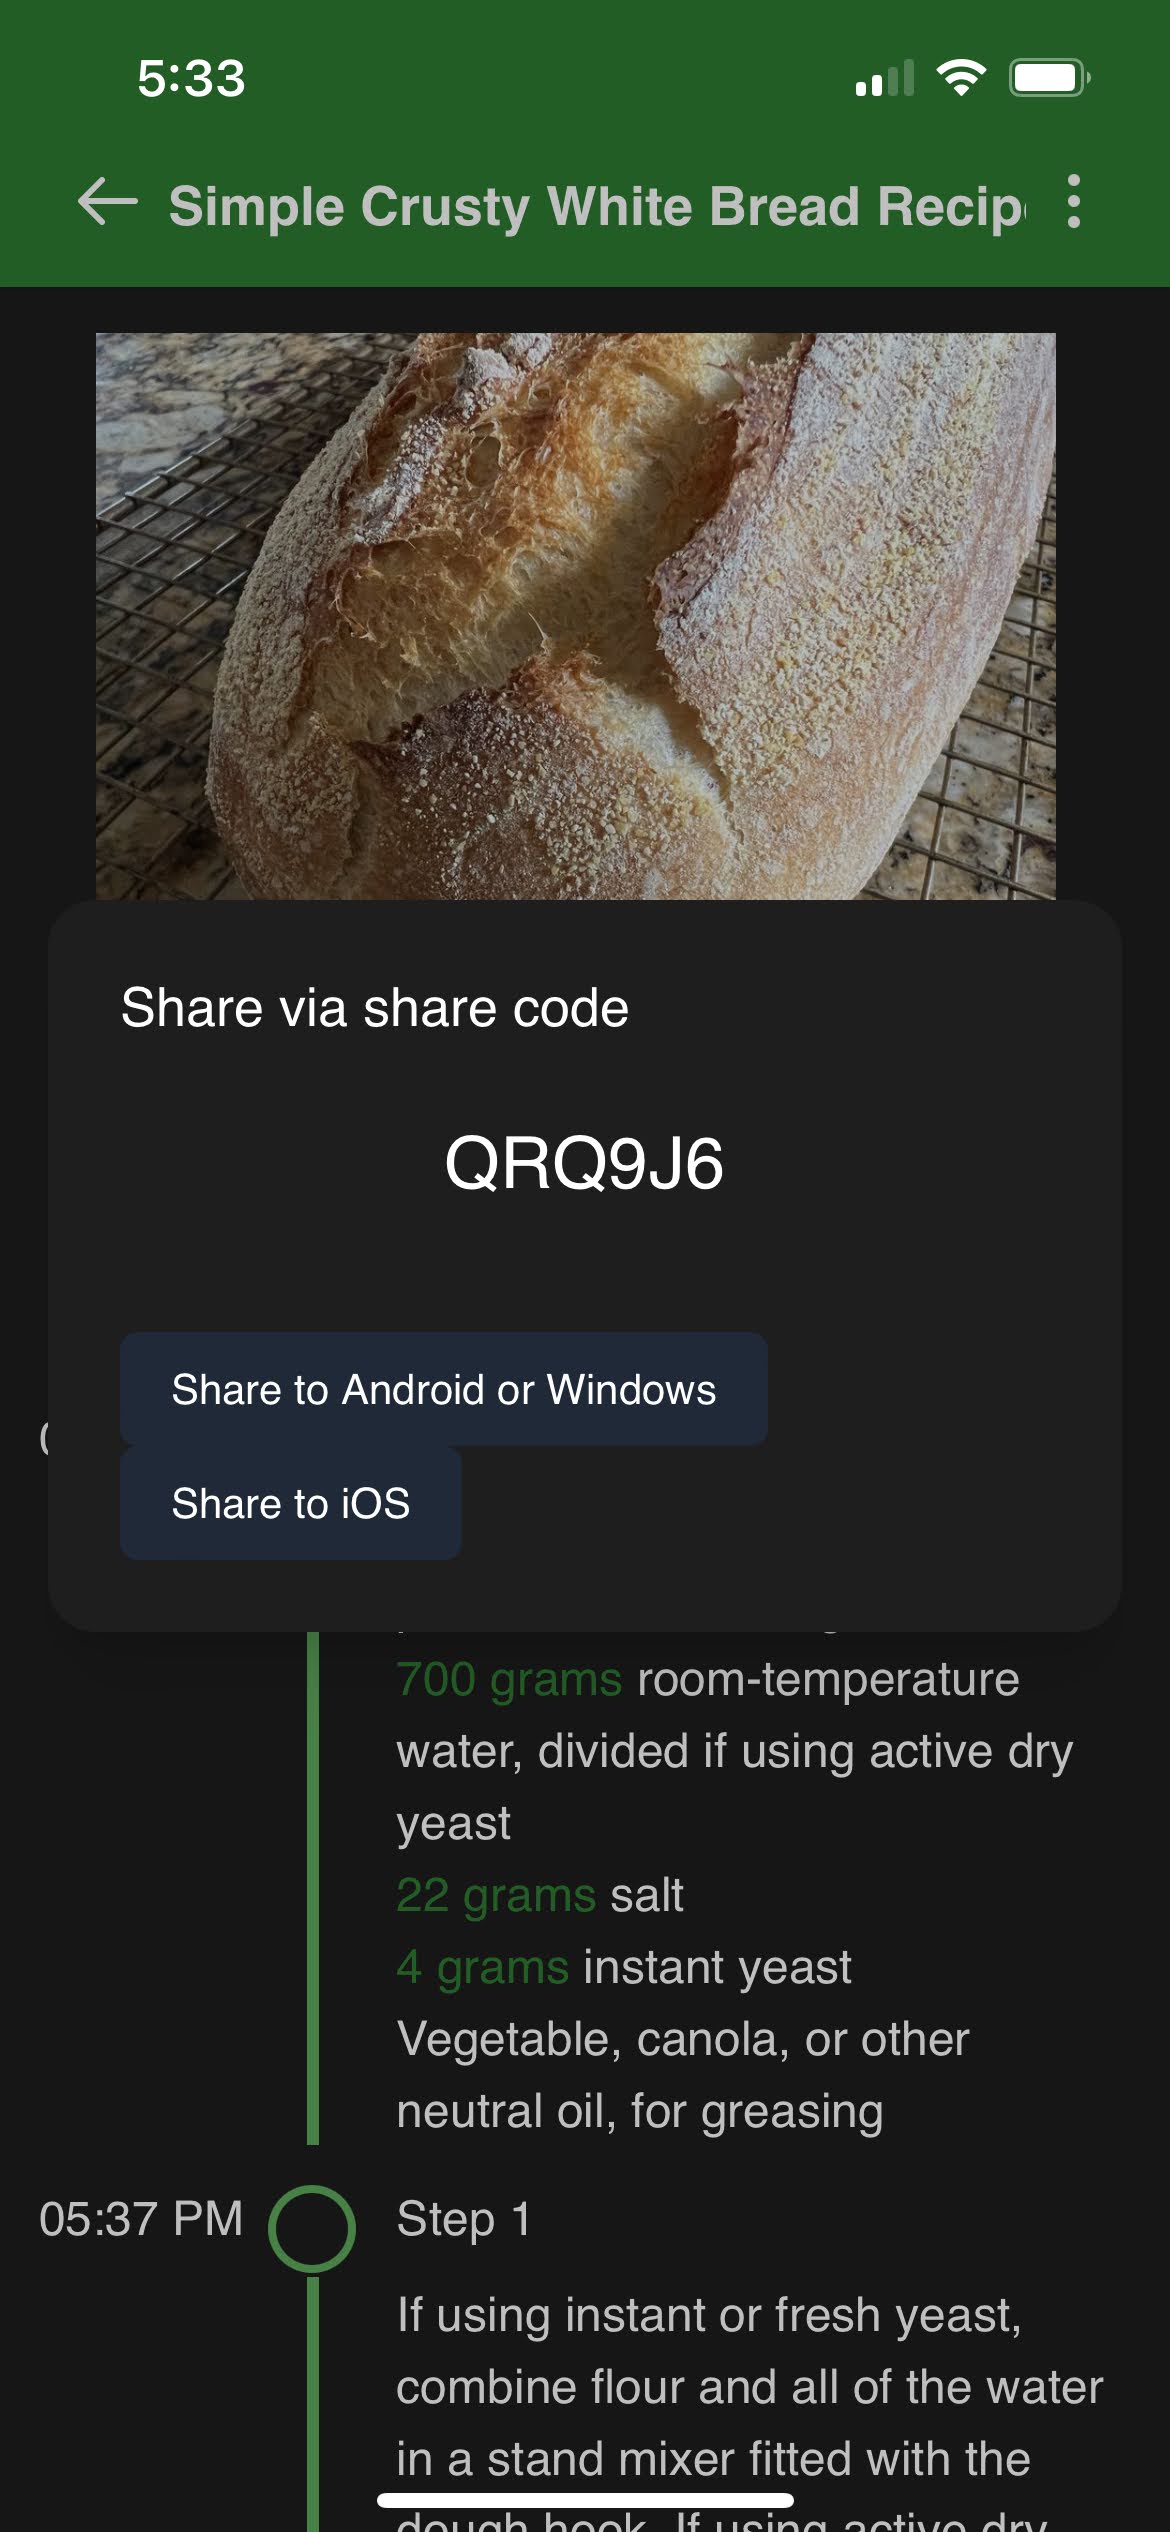 iOS share via share code